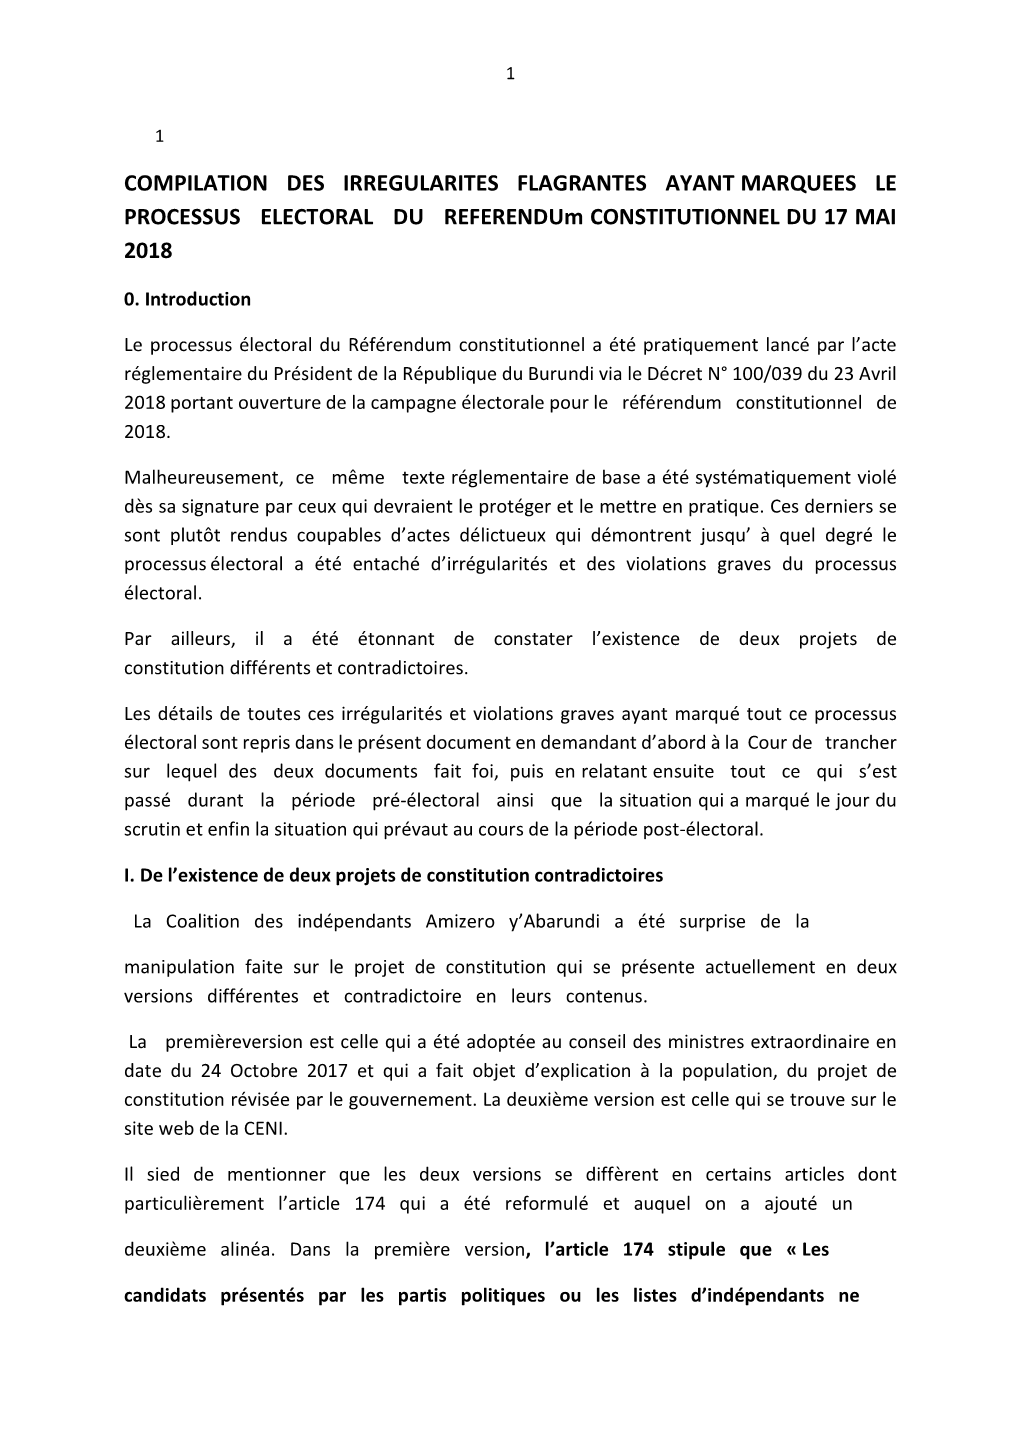 COMPILATION DES IRREGULARITES FLAGRANTES AYANT MARQUEES LE PROCESSUS ELECTORAL DU Referendum CONSTITUTIONNEL DU 17 MAI 2018